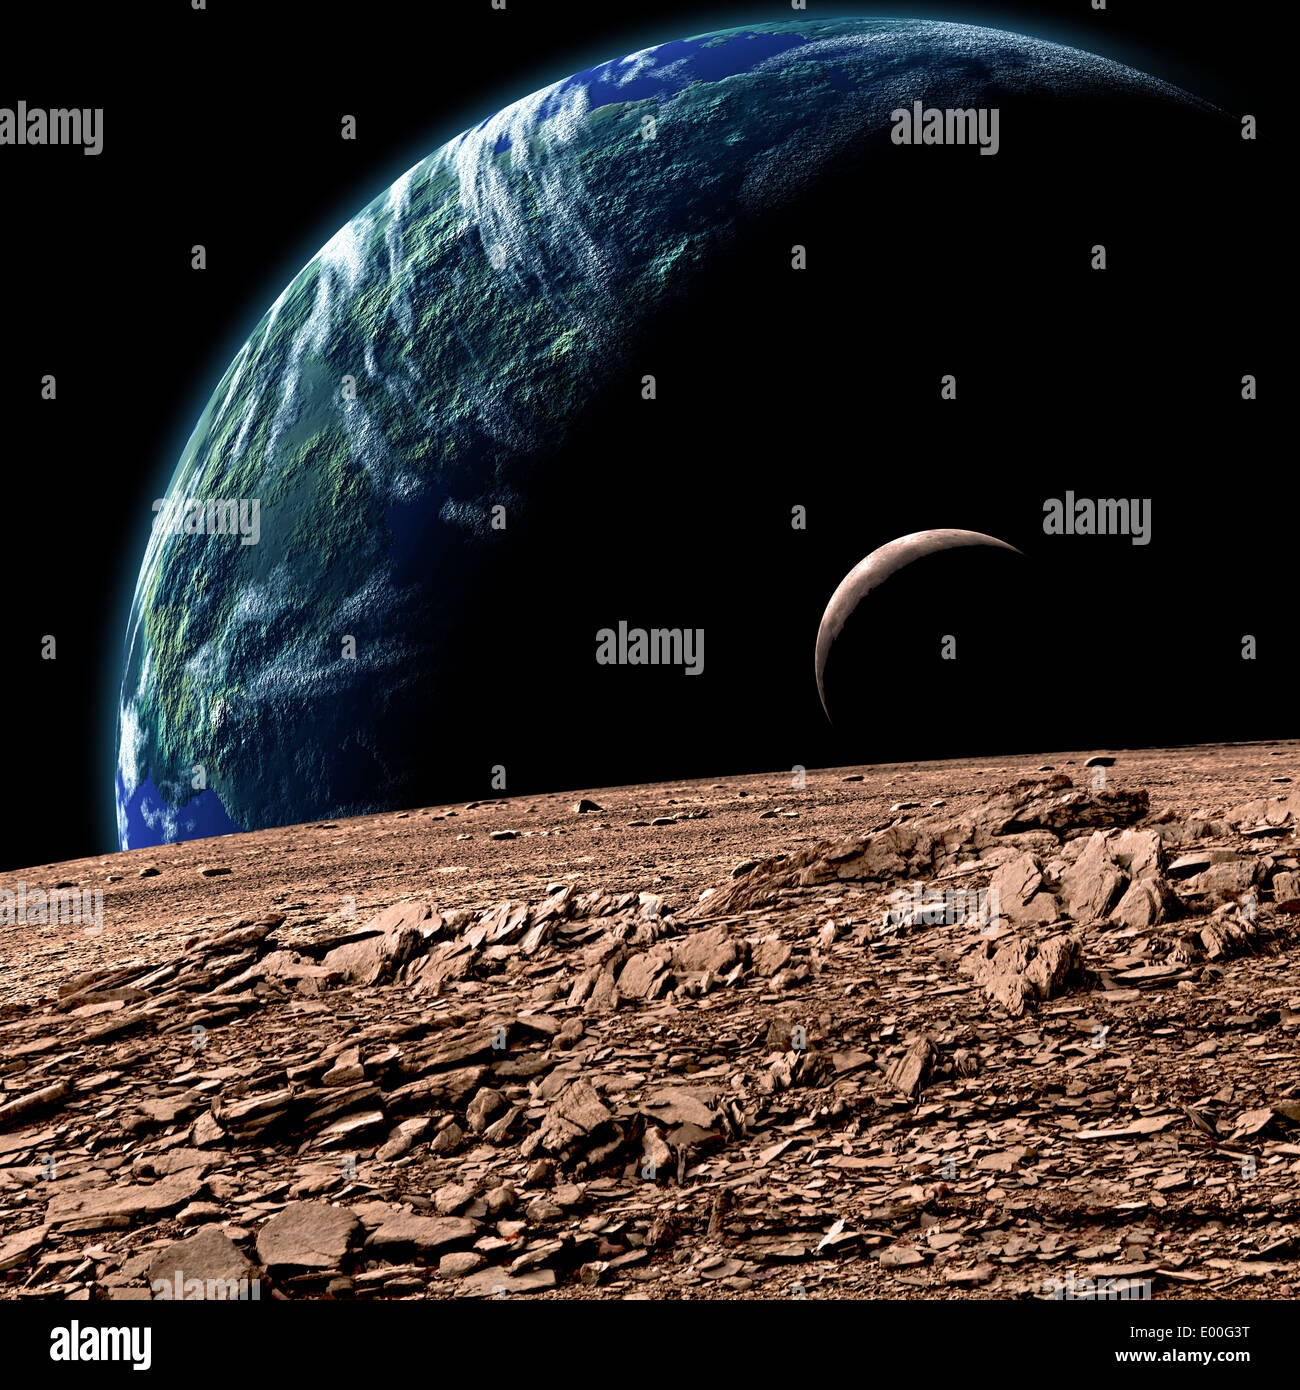 Une Planète Terre-like dans l'espace profond avec une Lune en orbite. Banque D'Images